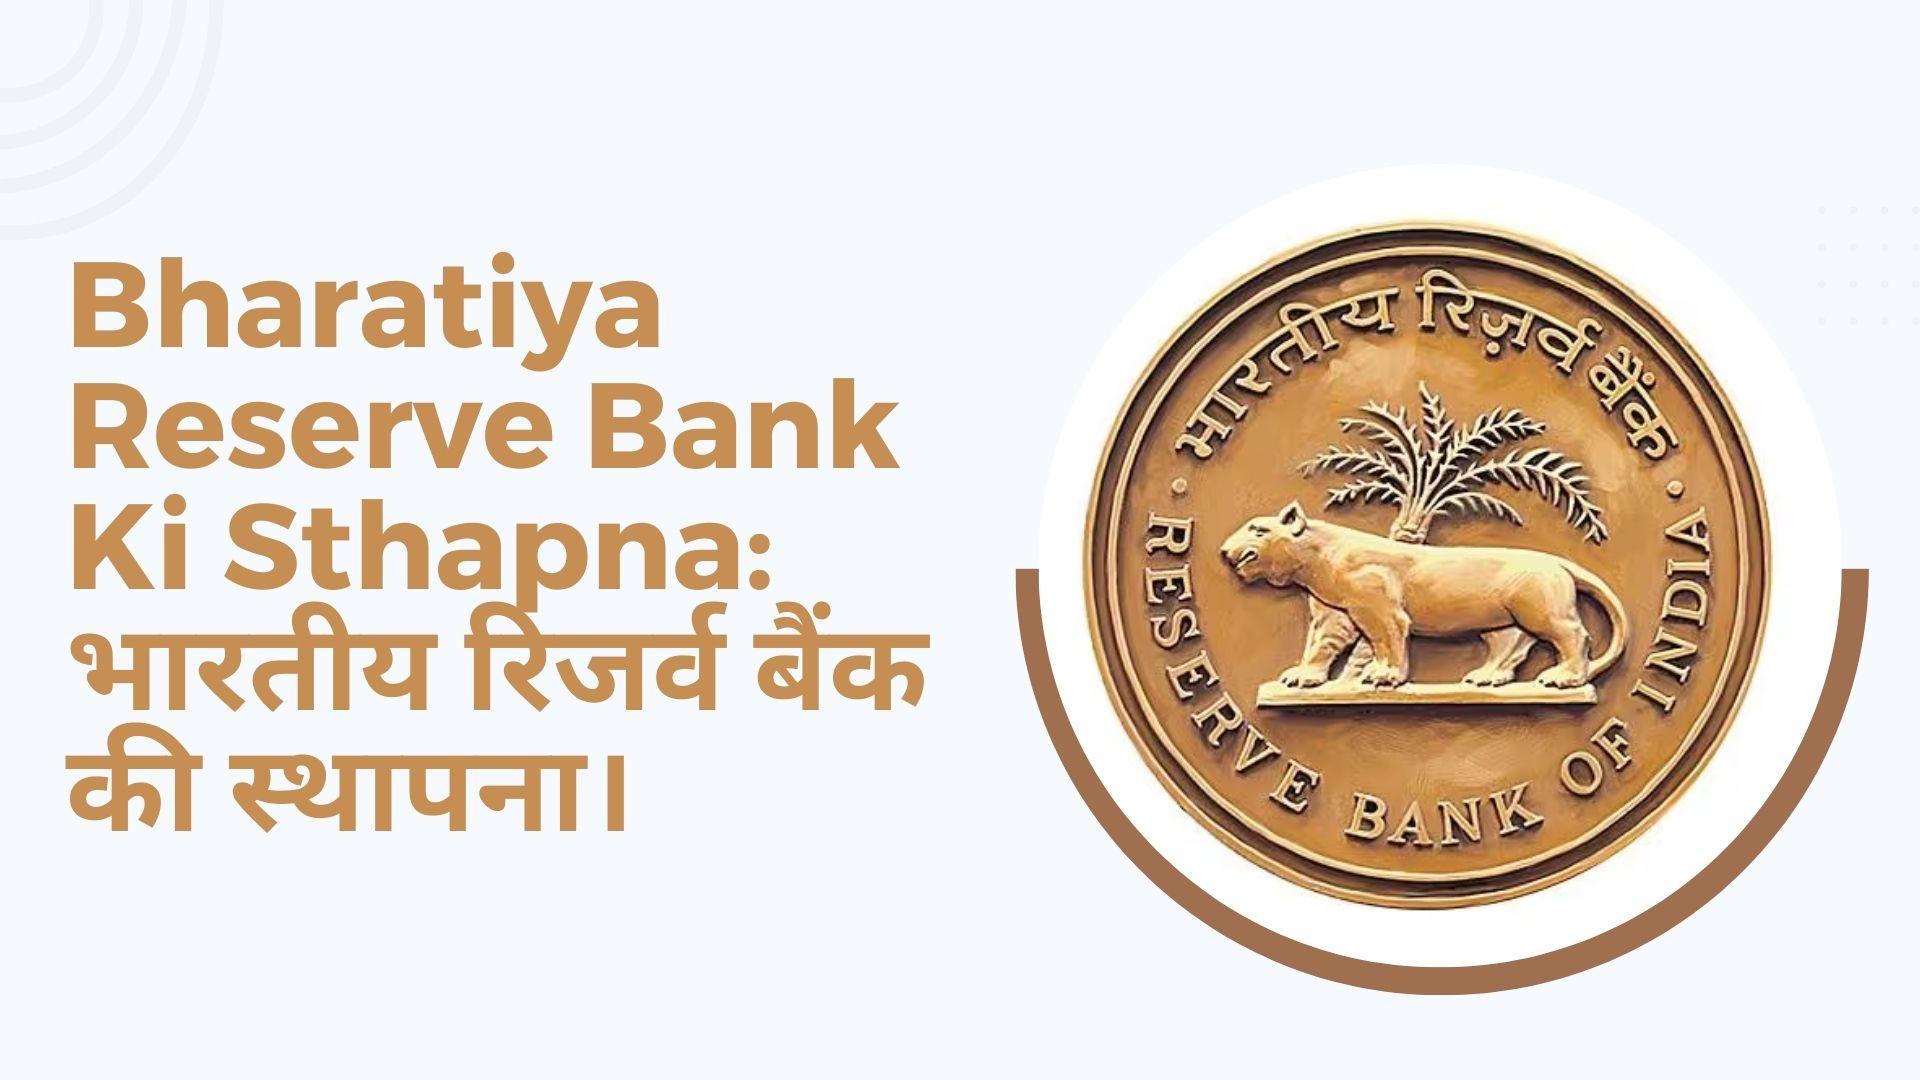 Bharatiya Reserve Bank Ki Sthapna Kab Hui Thi